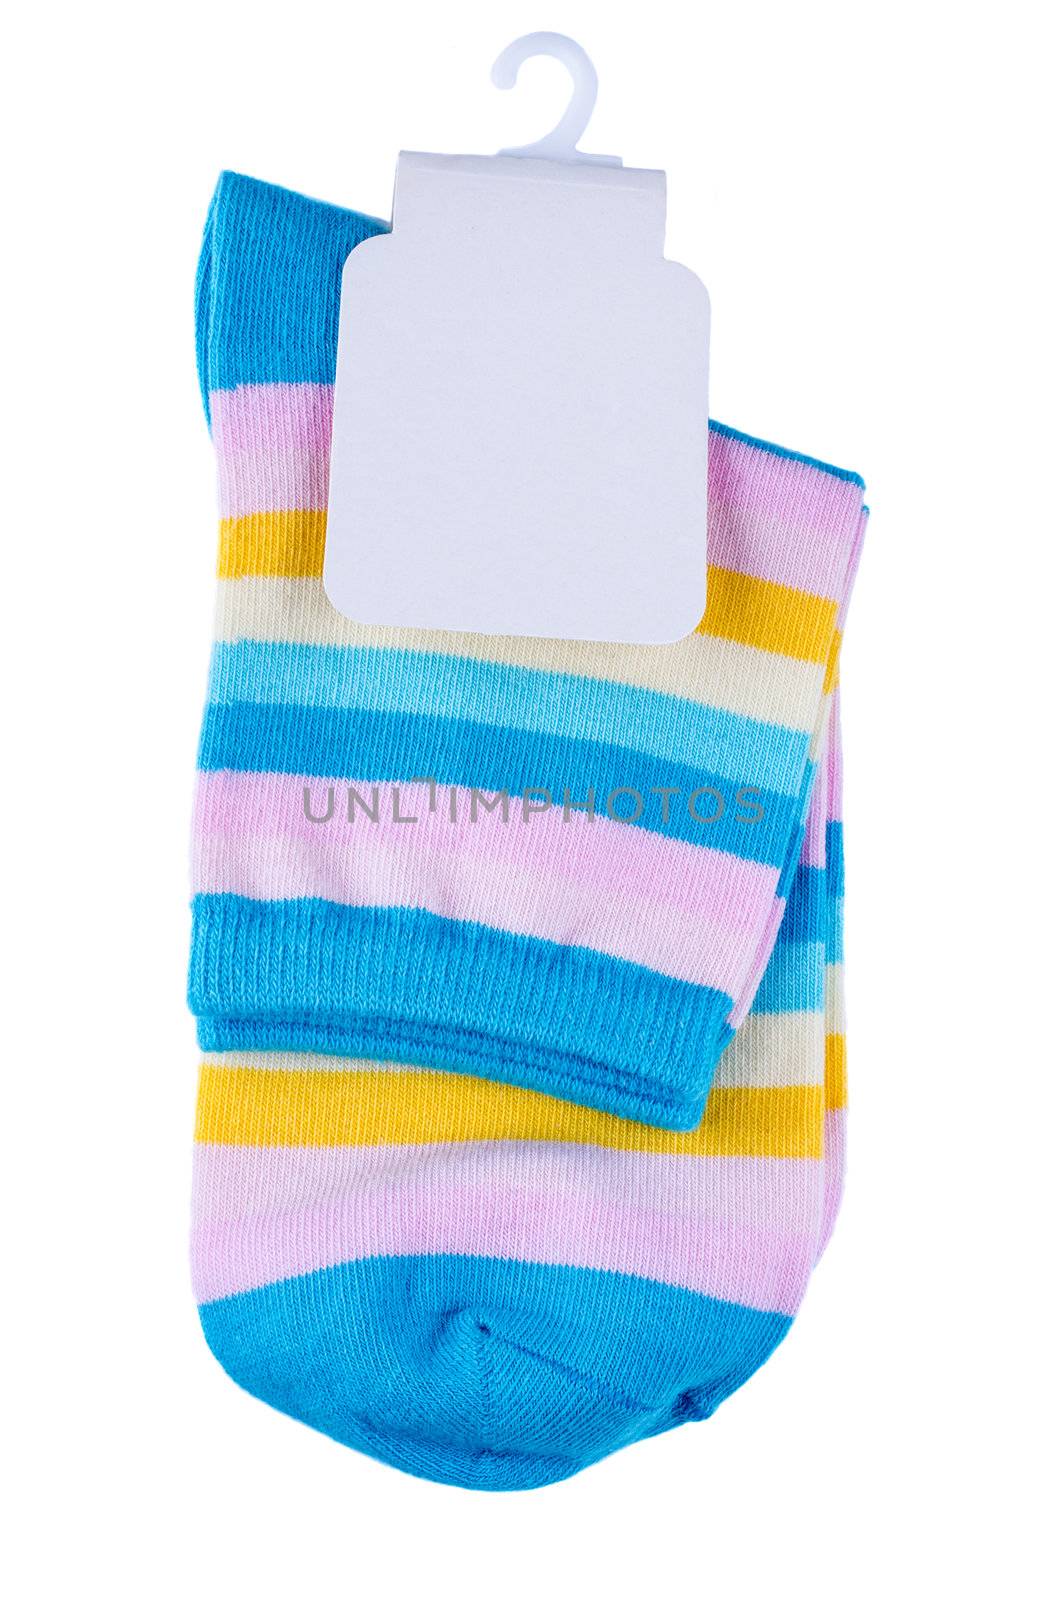 Multicolored striped socks by Nanisimova